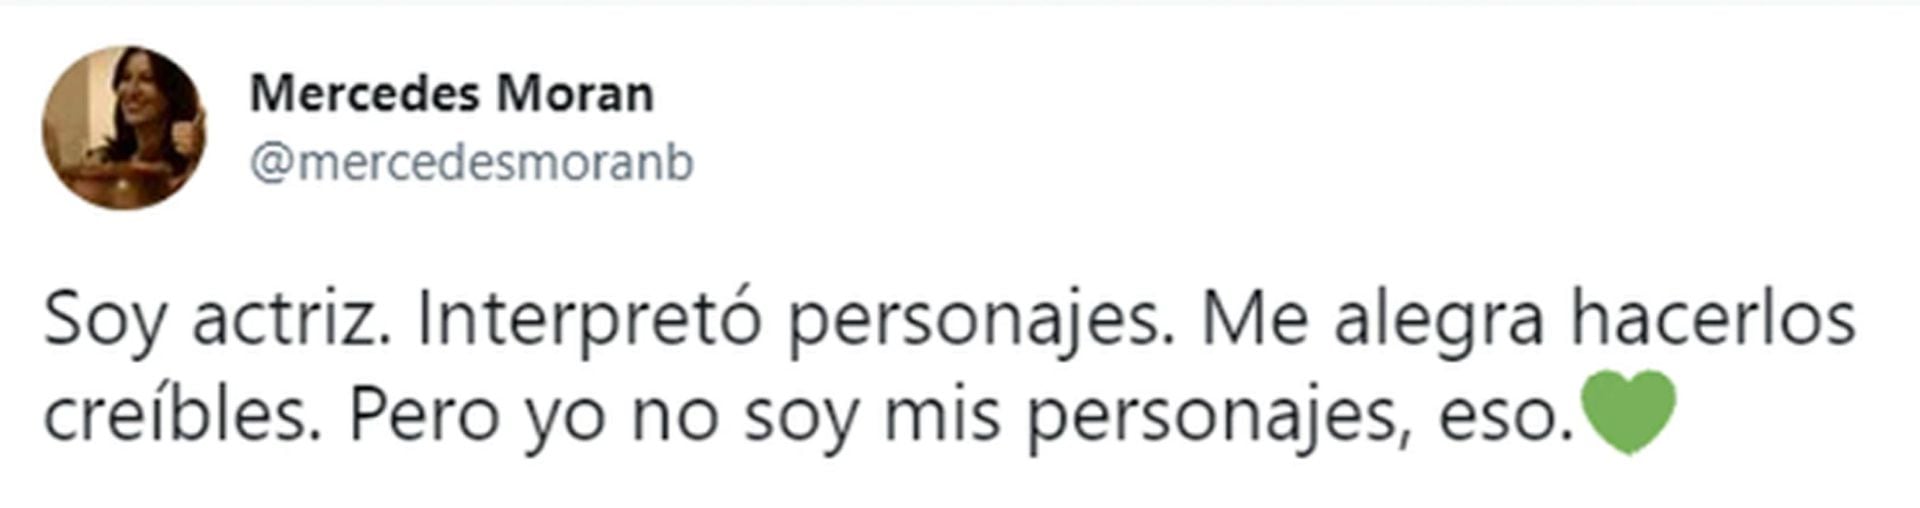 El tweet de Mercedes Morán contra las críticas recibidas por su adaptación de Theodora en el Teatro Colón